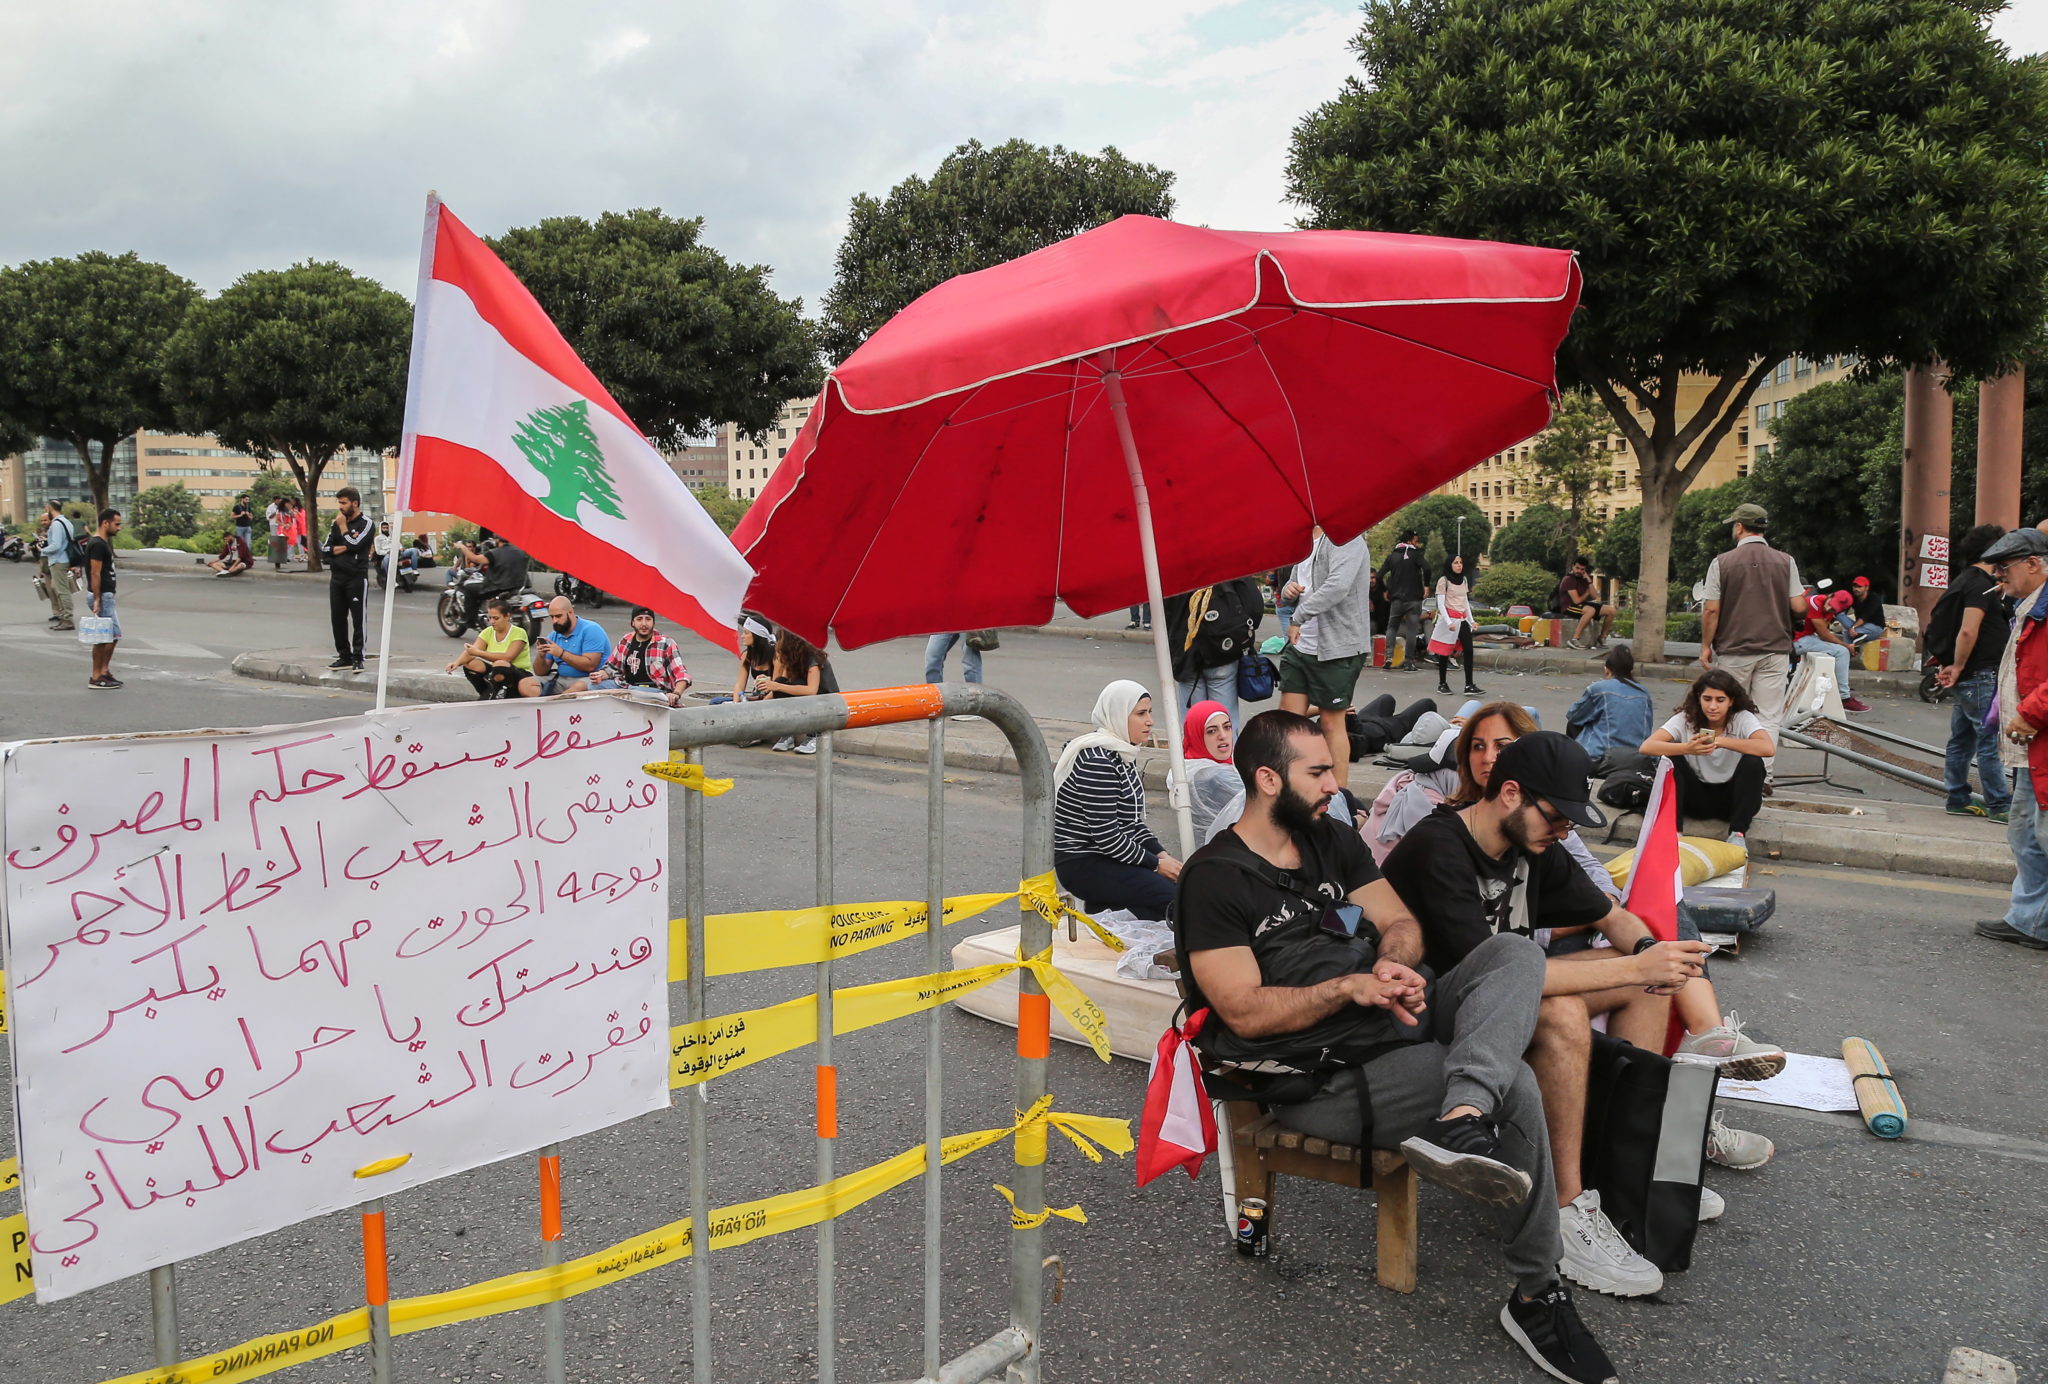 Liban: trwają protesty mieszkańców przeciwko rządom Michela Aouna. Prezydent ogłosił, że jest gotowy do negocjacji z przedstawicielami demonstrantów, jednak protesty pozostają bez przywódców, fot. PAP/EPA